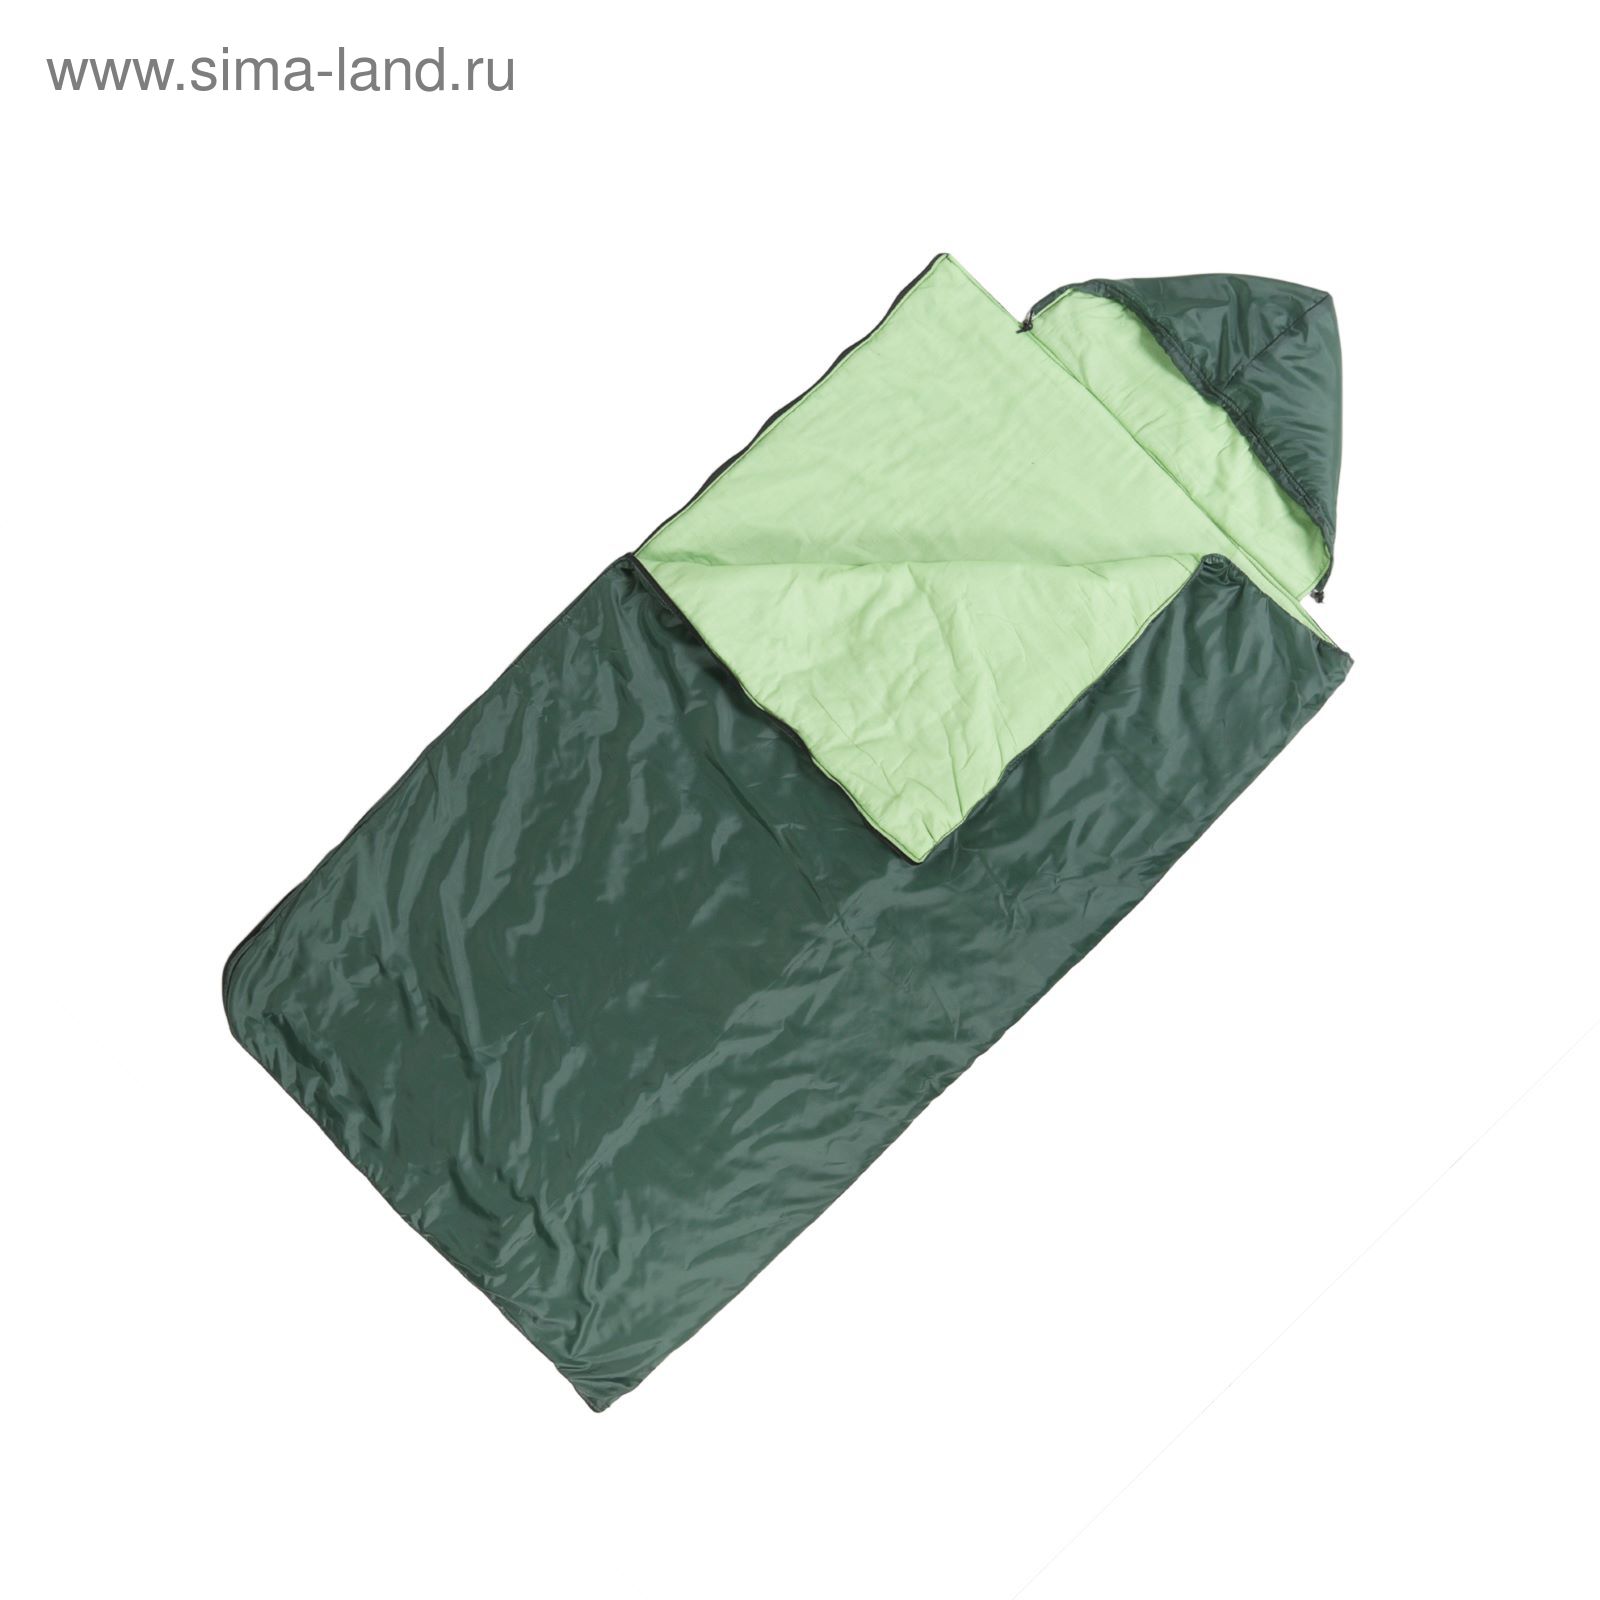 Спальный мешок "Комфорт" 2-х слойный, с капюшоном, увеличенный, размер 225 х 105 см